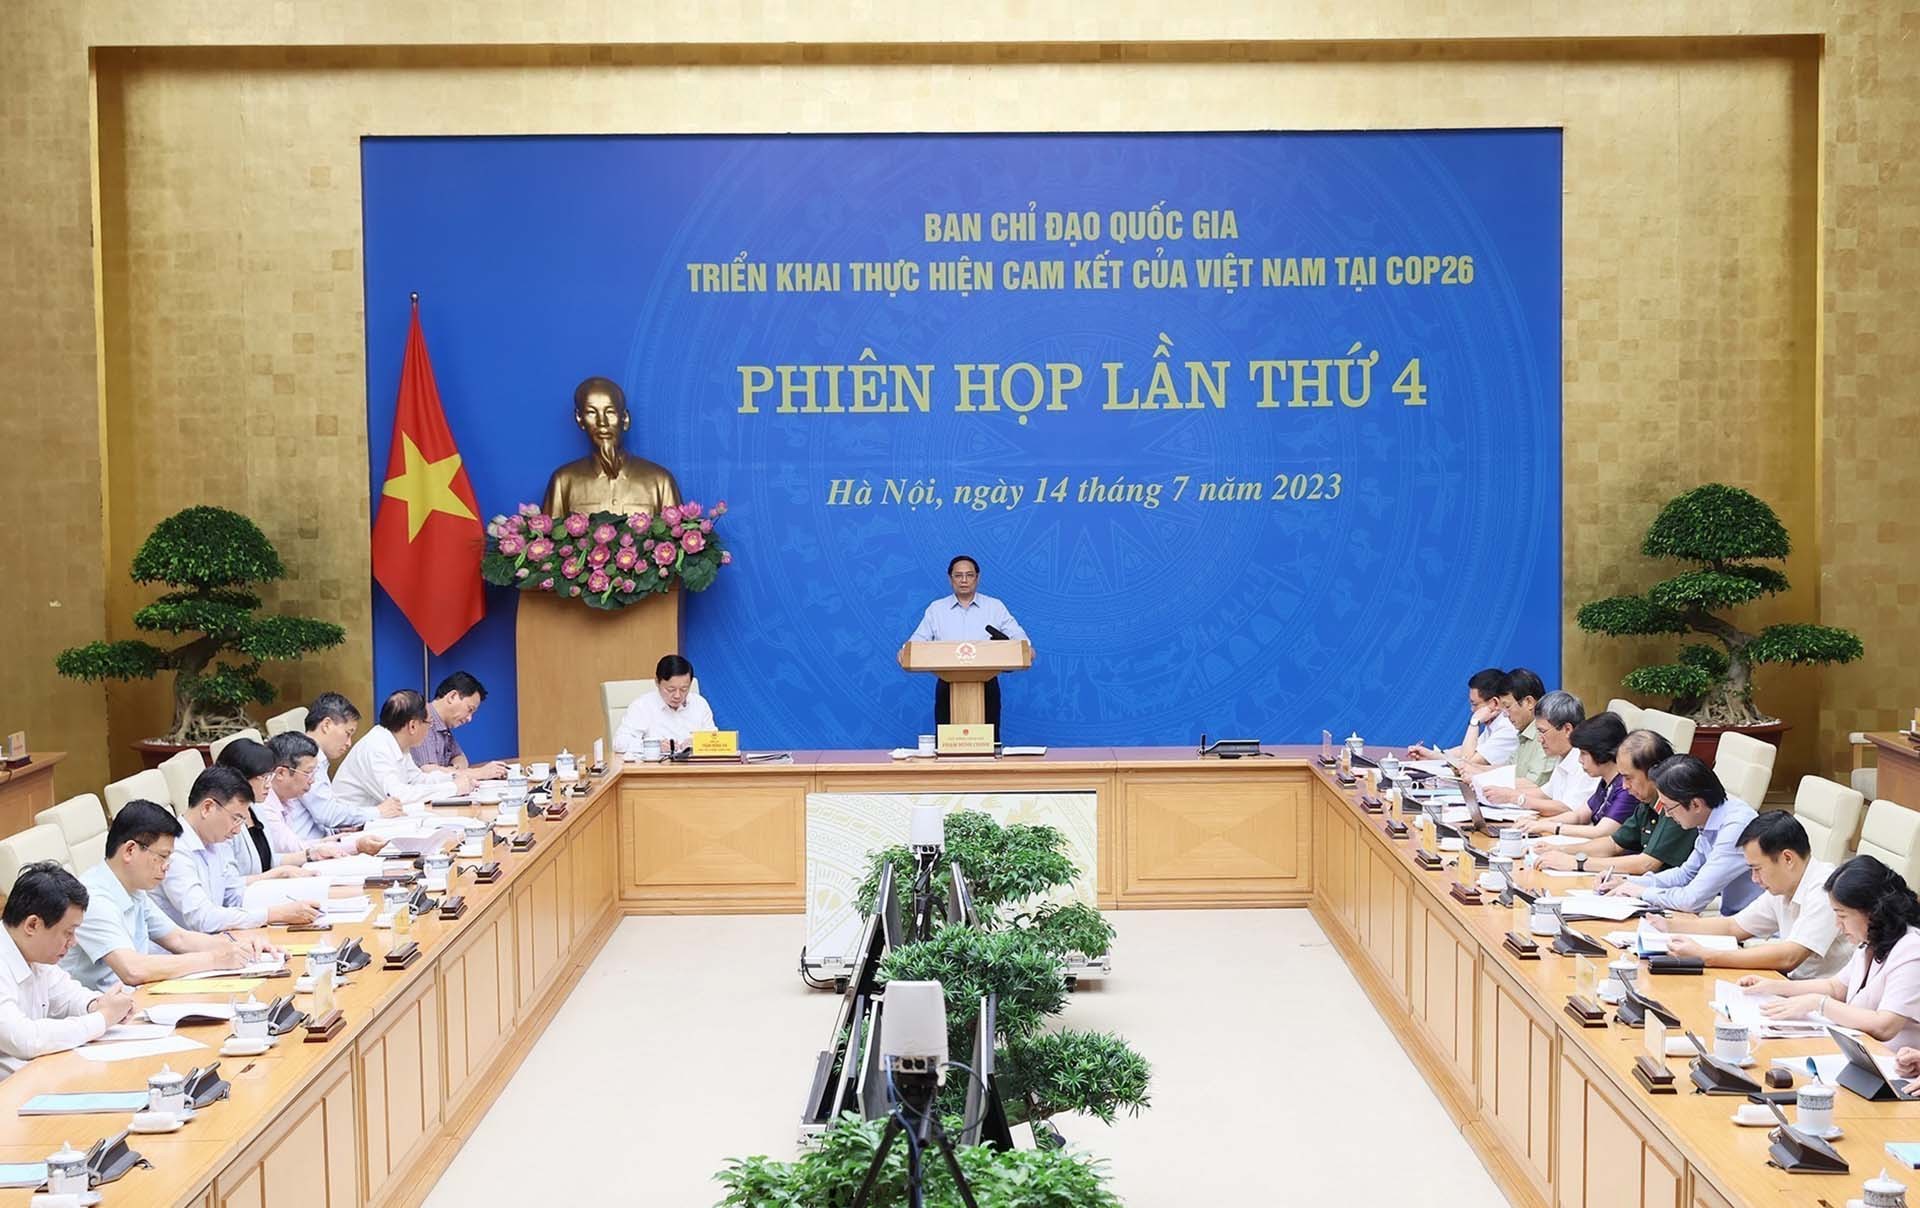 Thủ tướng Phạm Minh Chính chủ trì Phiên họp lần thứ 4 Ban chỉ đạo Quốc gia triển khai thực hiện cam kết của Việt Nam tại COP26. (Nguồn: TTXVN)